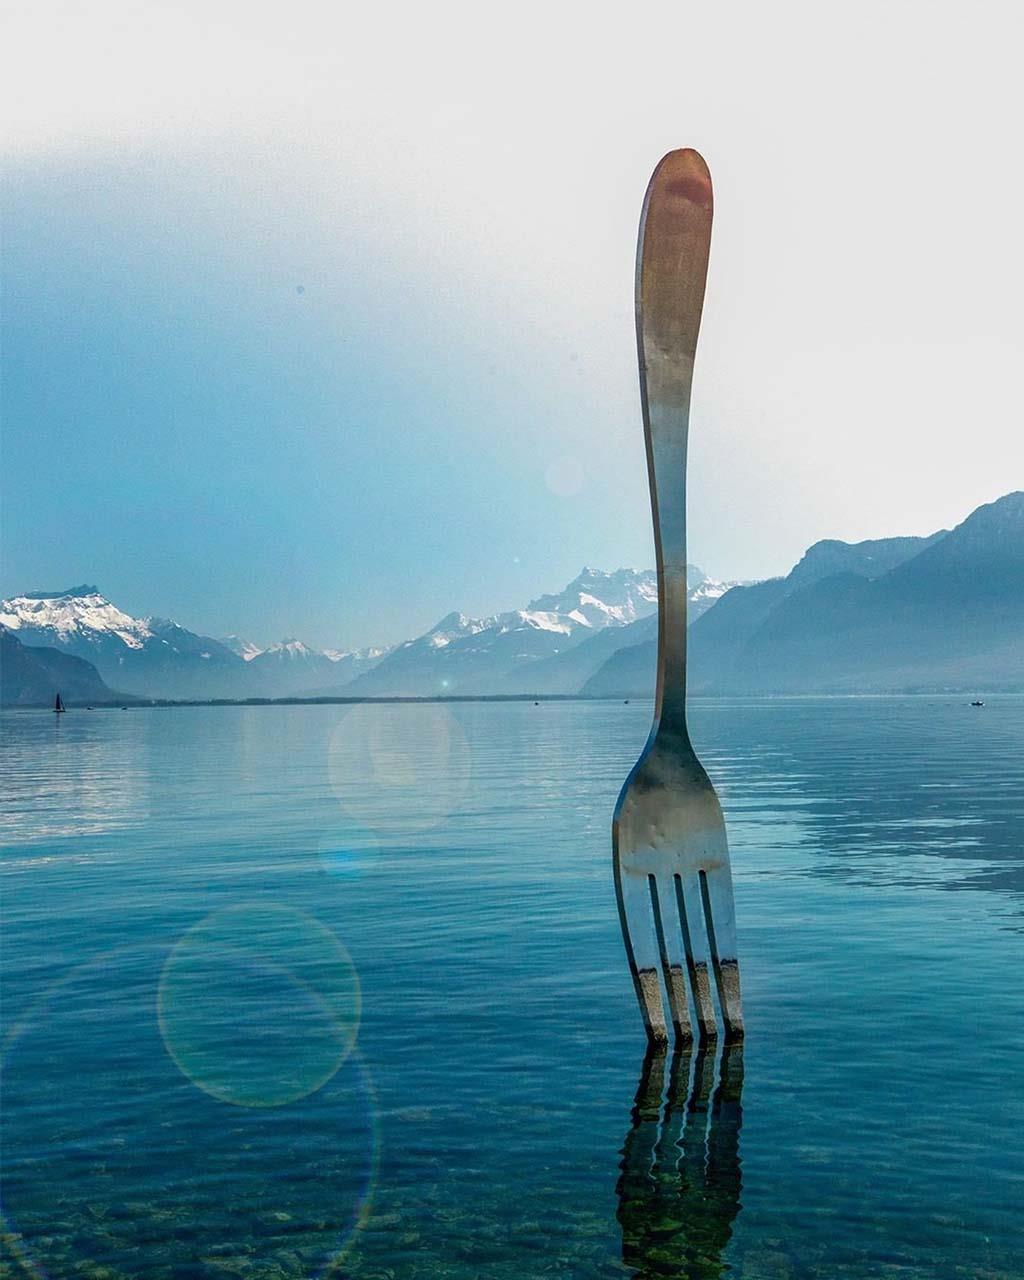 16. The Fork, Switzerland